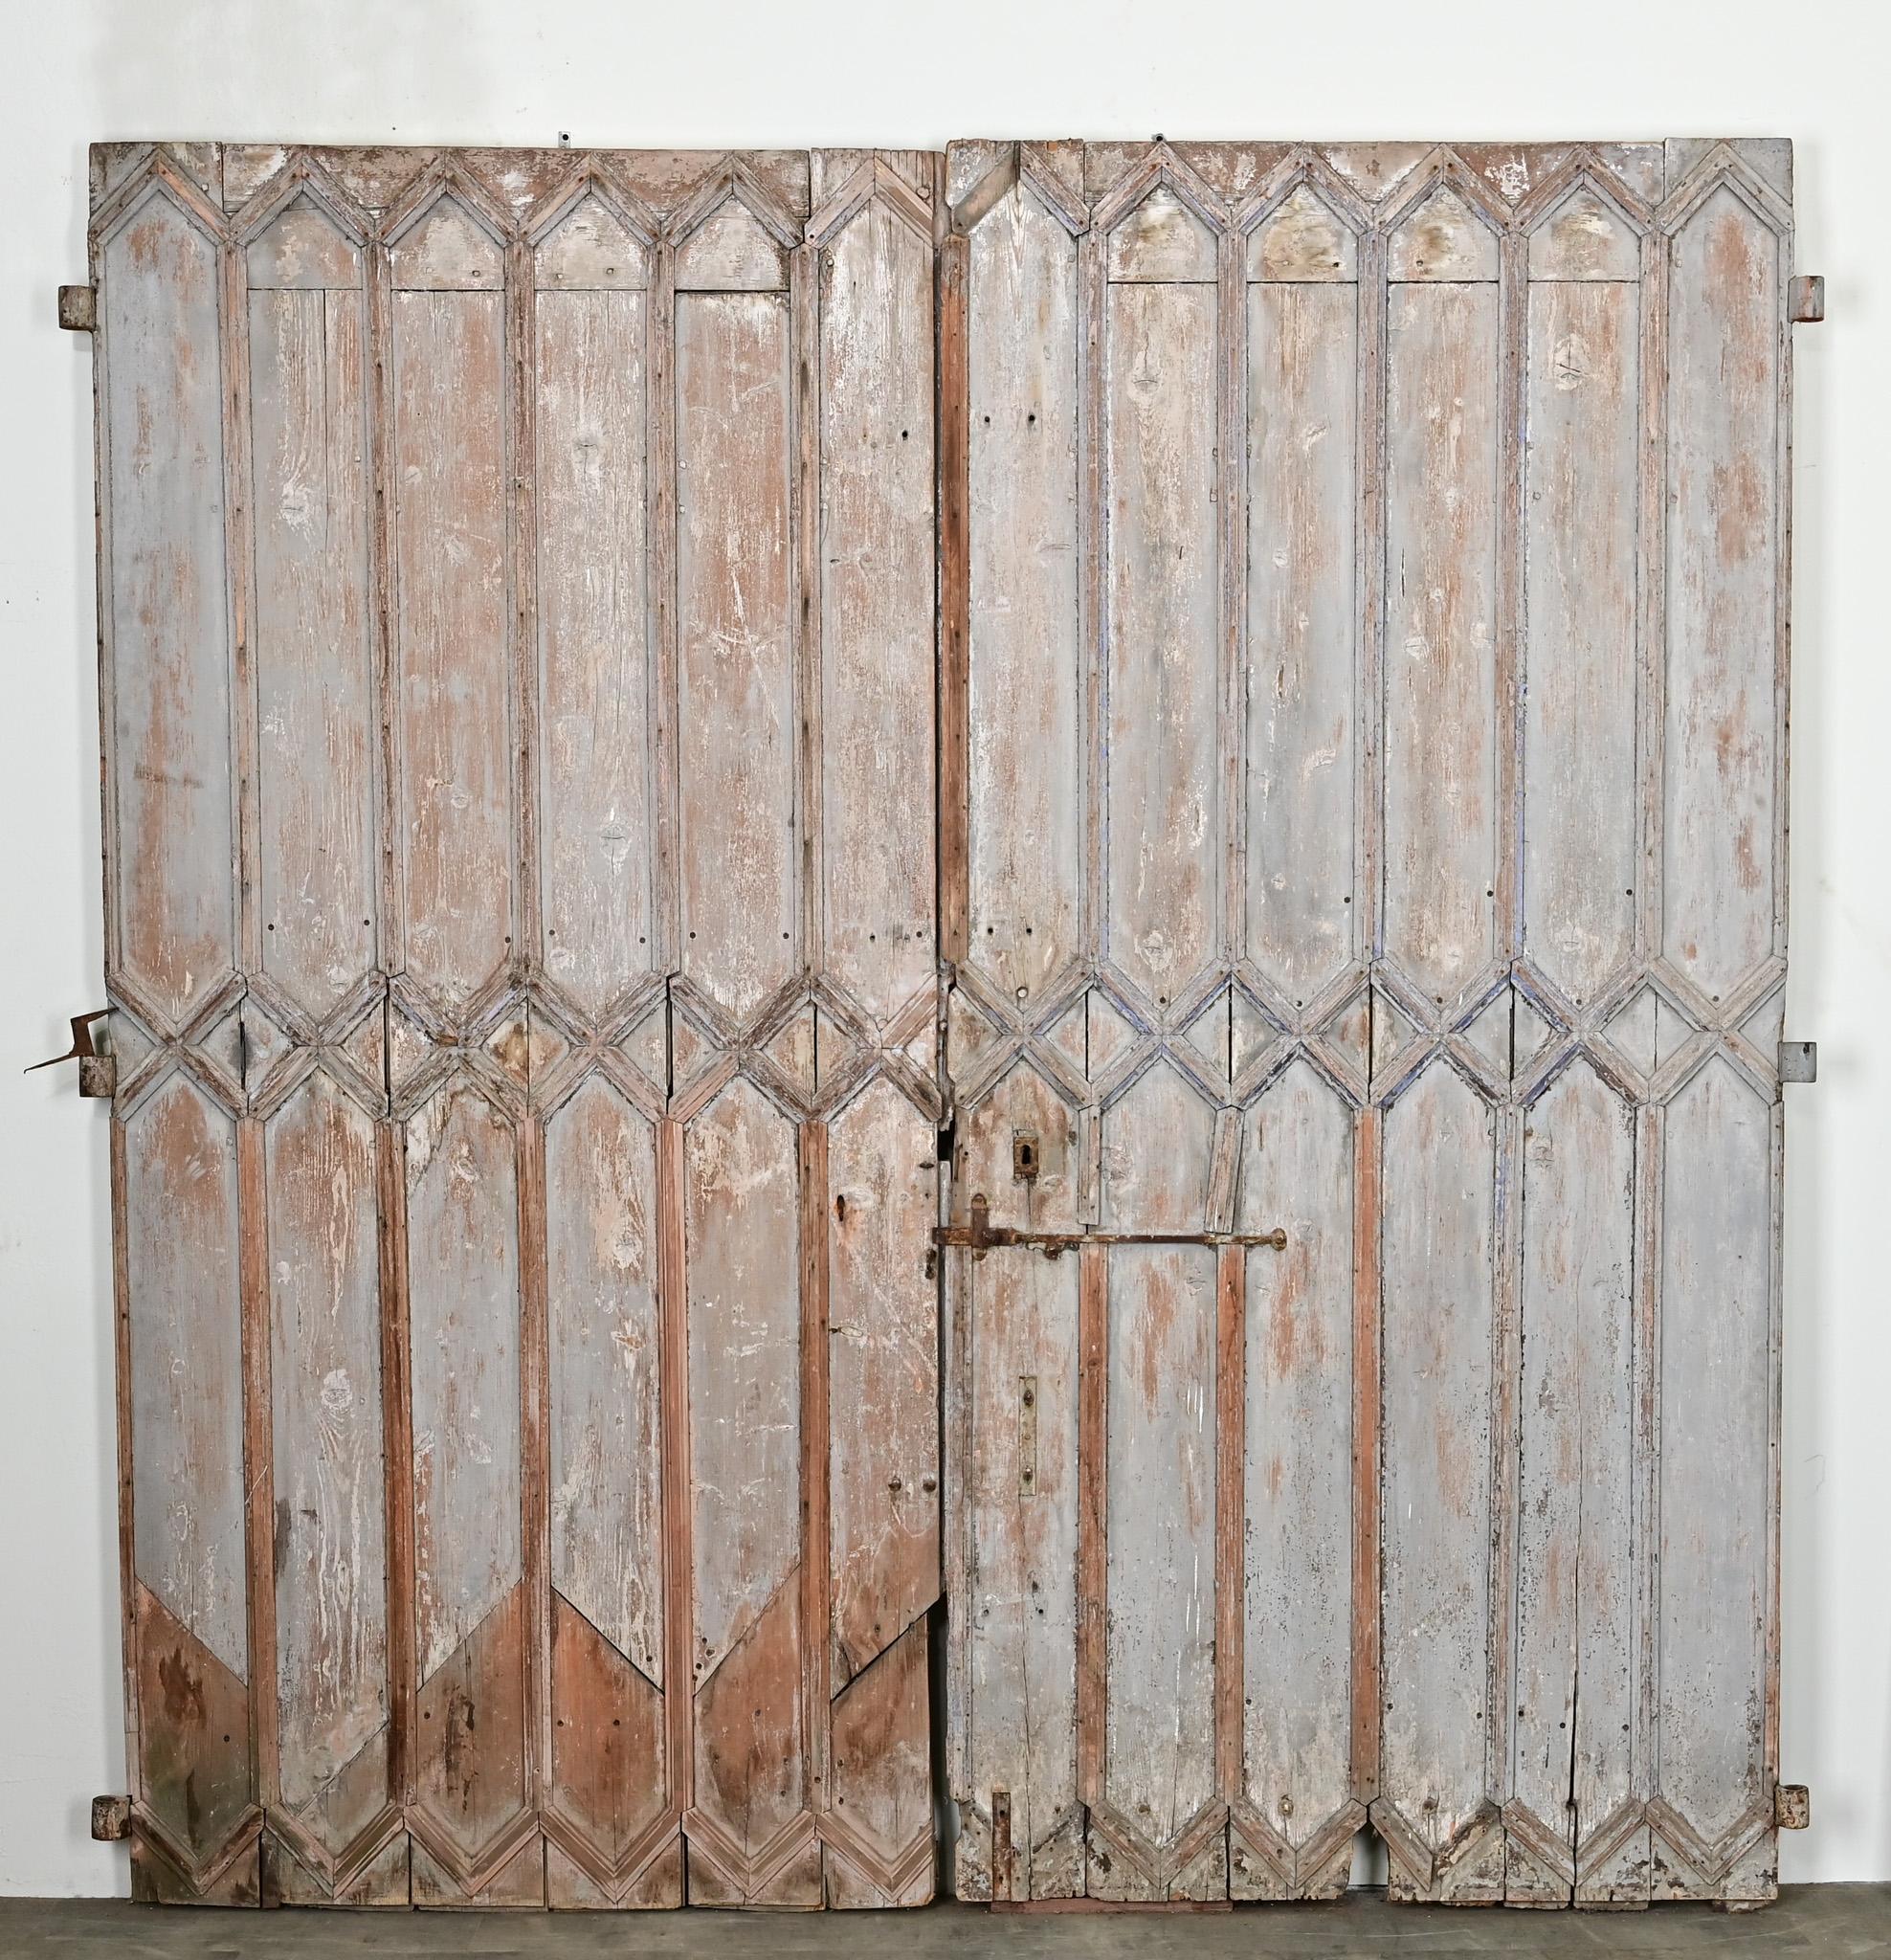 Eine große Reihe von Französisch hölzernen Eingangstüren mit seiner ursprünglichen abgenutzt gemalt Oberfläche. Die Türen sind aus Massivholz mit geometrischen Holzleisten gefertigt und setzen ein Zeichen. Die Originalbeschläge aus Schmiedeeisen